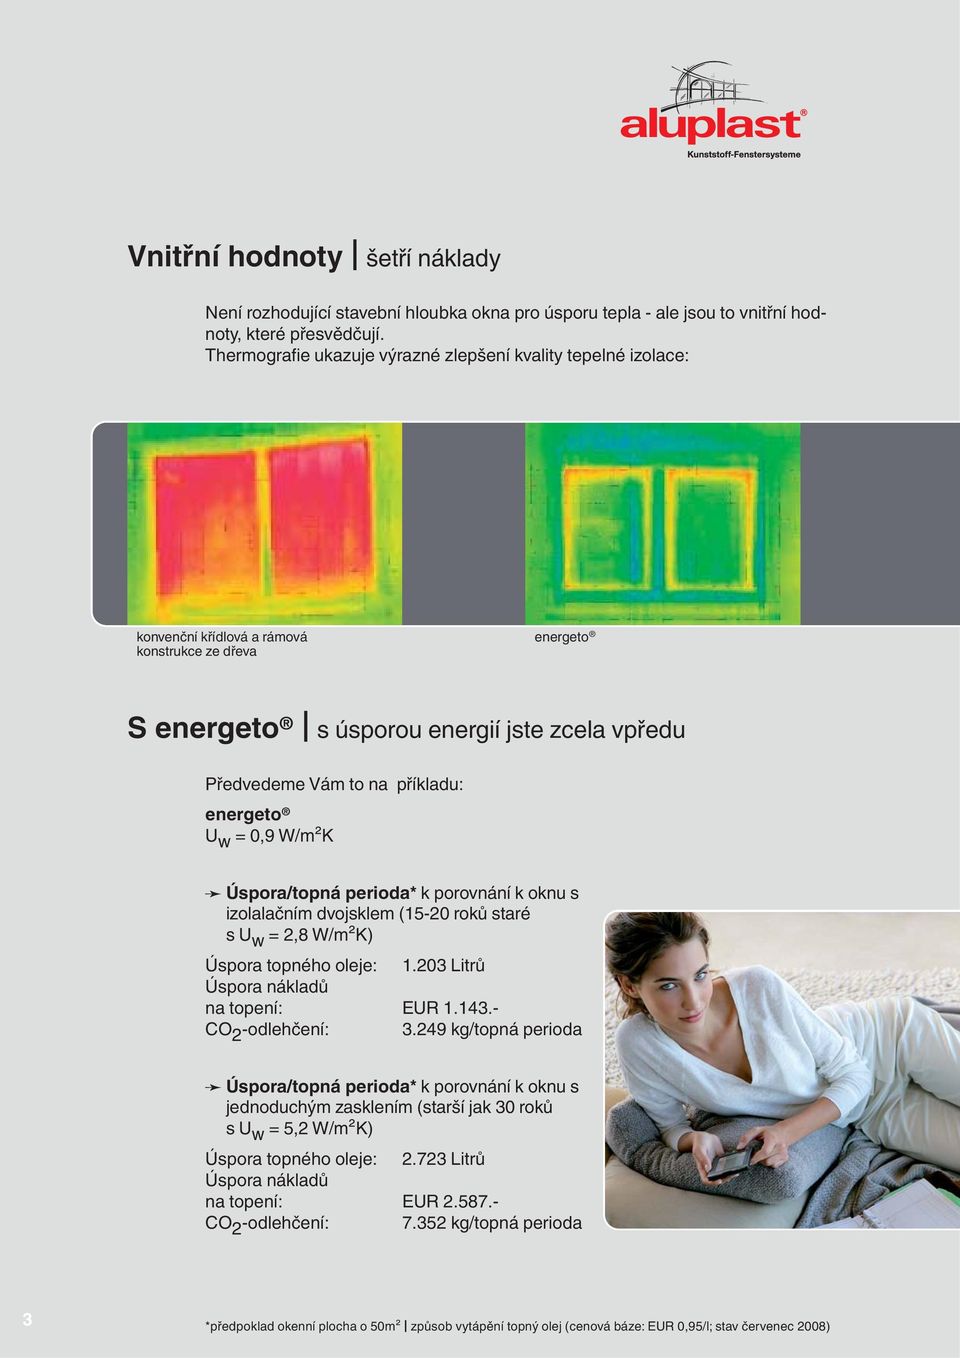 energeto U w = 0,9 W/m²K Úspora/topná perioda* k porovnání k oknu s izolalačním dvojsklem (15-20 roků staré s U w = 2,8 W/m²K) Úspora topného oleje: 1.203 Litrů Úspora nákladů na topení: EUR 1.143.